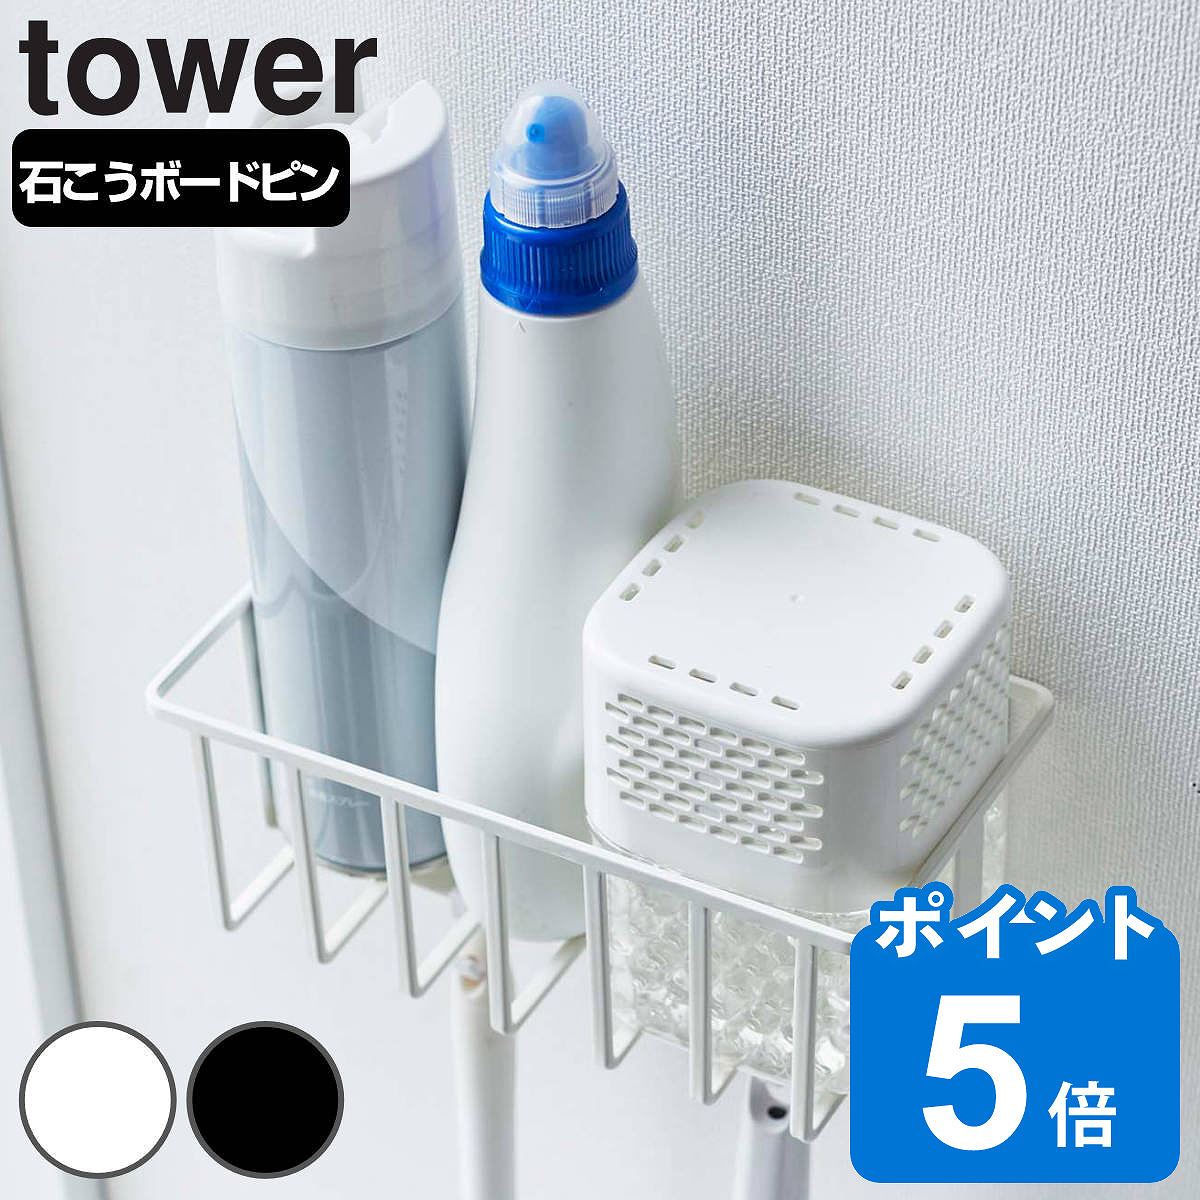 山崎実業 tower ウォールトイレ用品収納ラック タワー